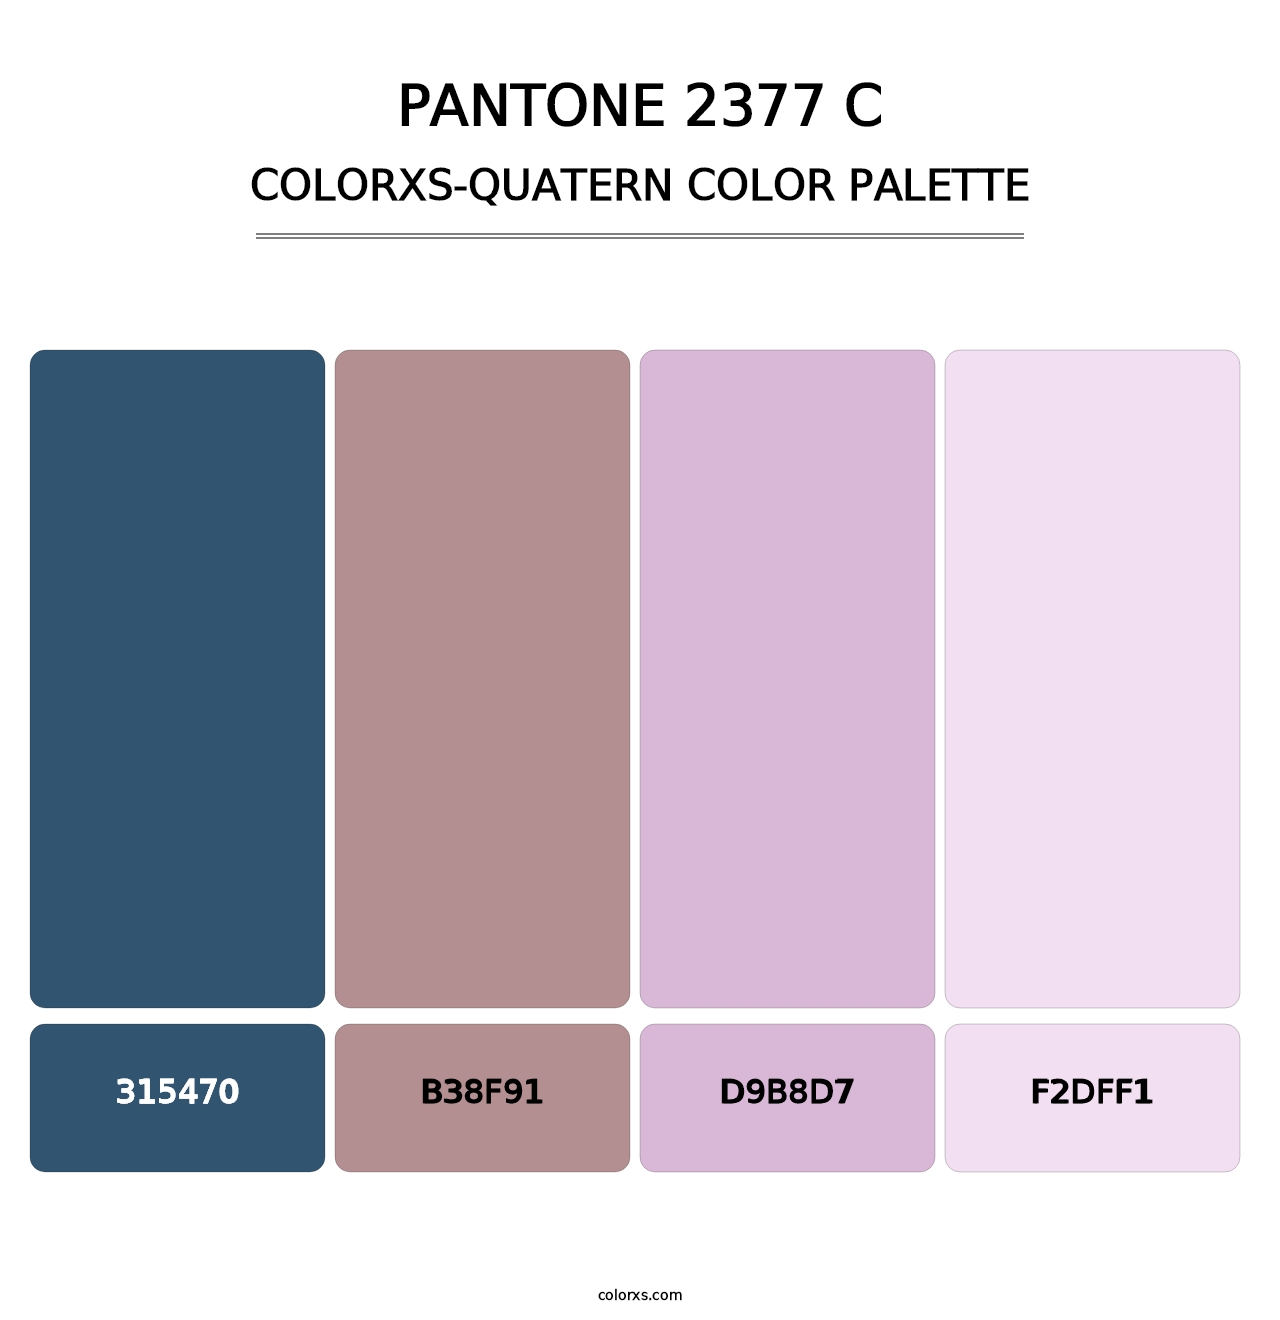 PANTONE 2377 C - Colorxs Quatern Palette